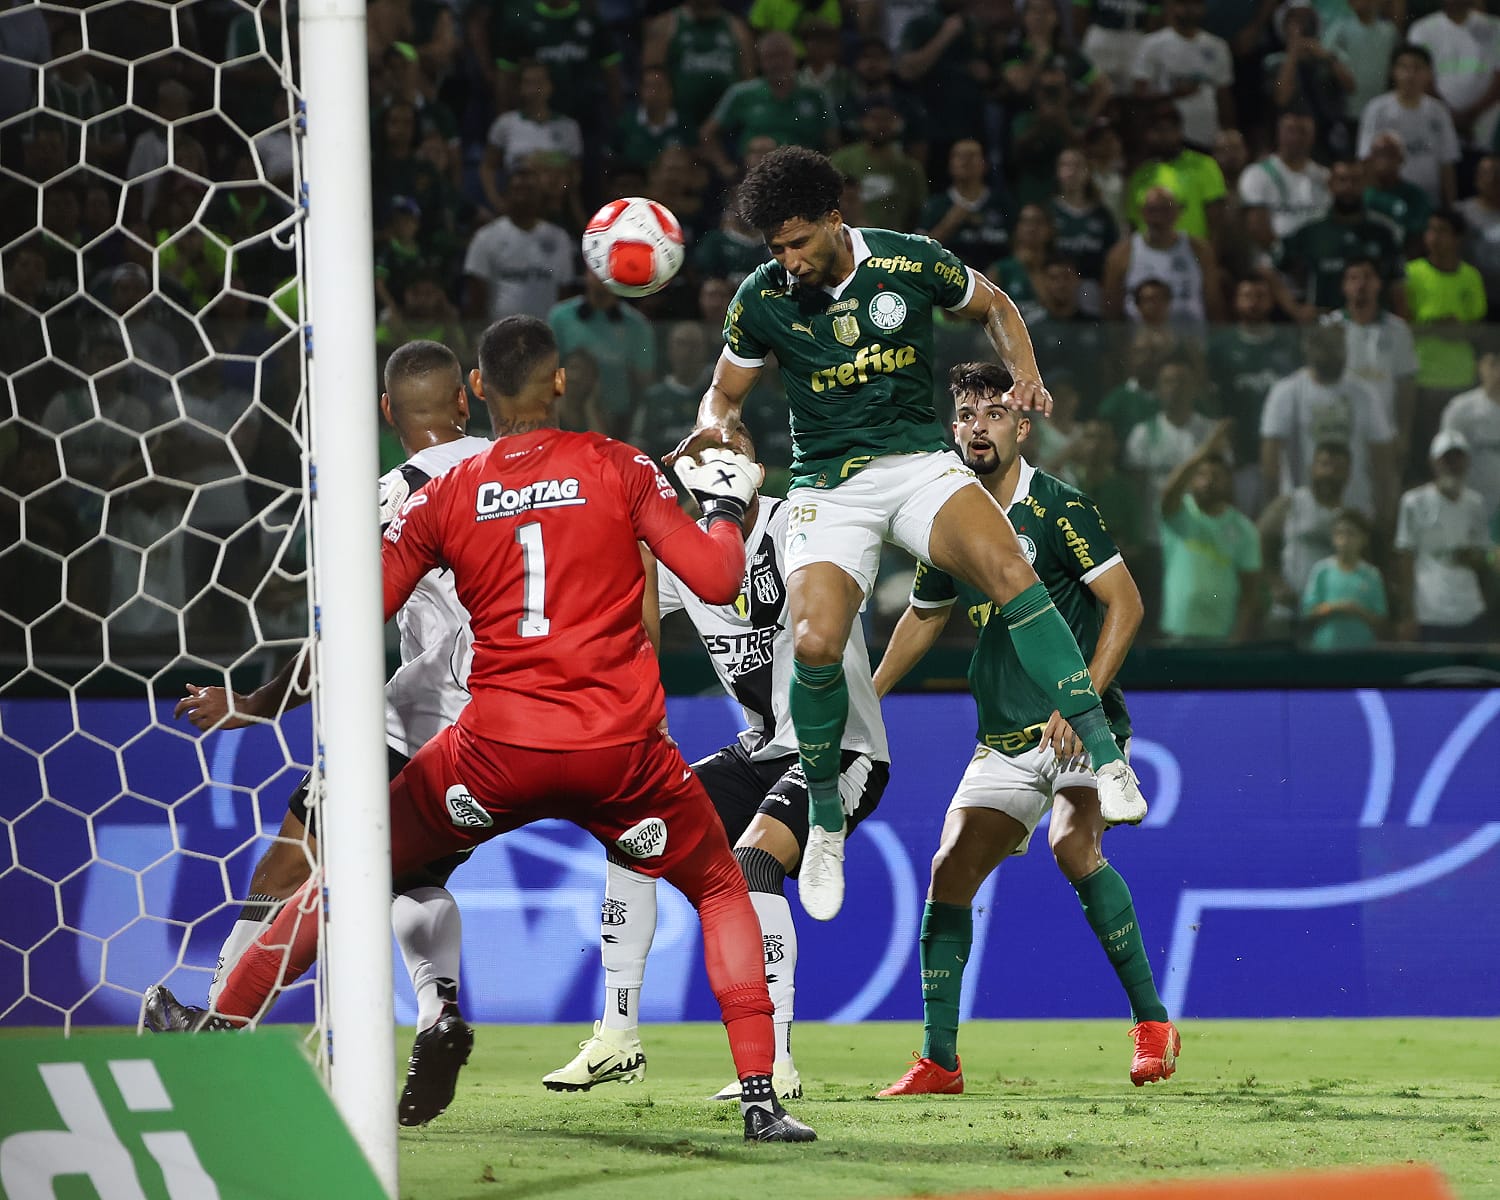 Murilo pulando para cabecear a bola e fazer o 3º gol da partida - (Foto: Palmeiras)